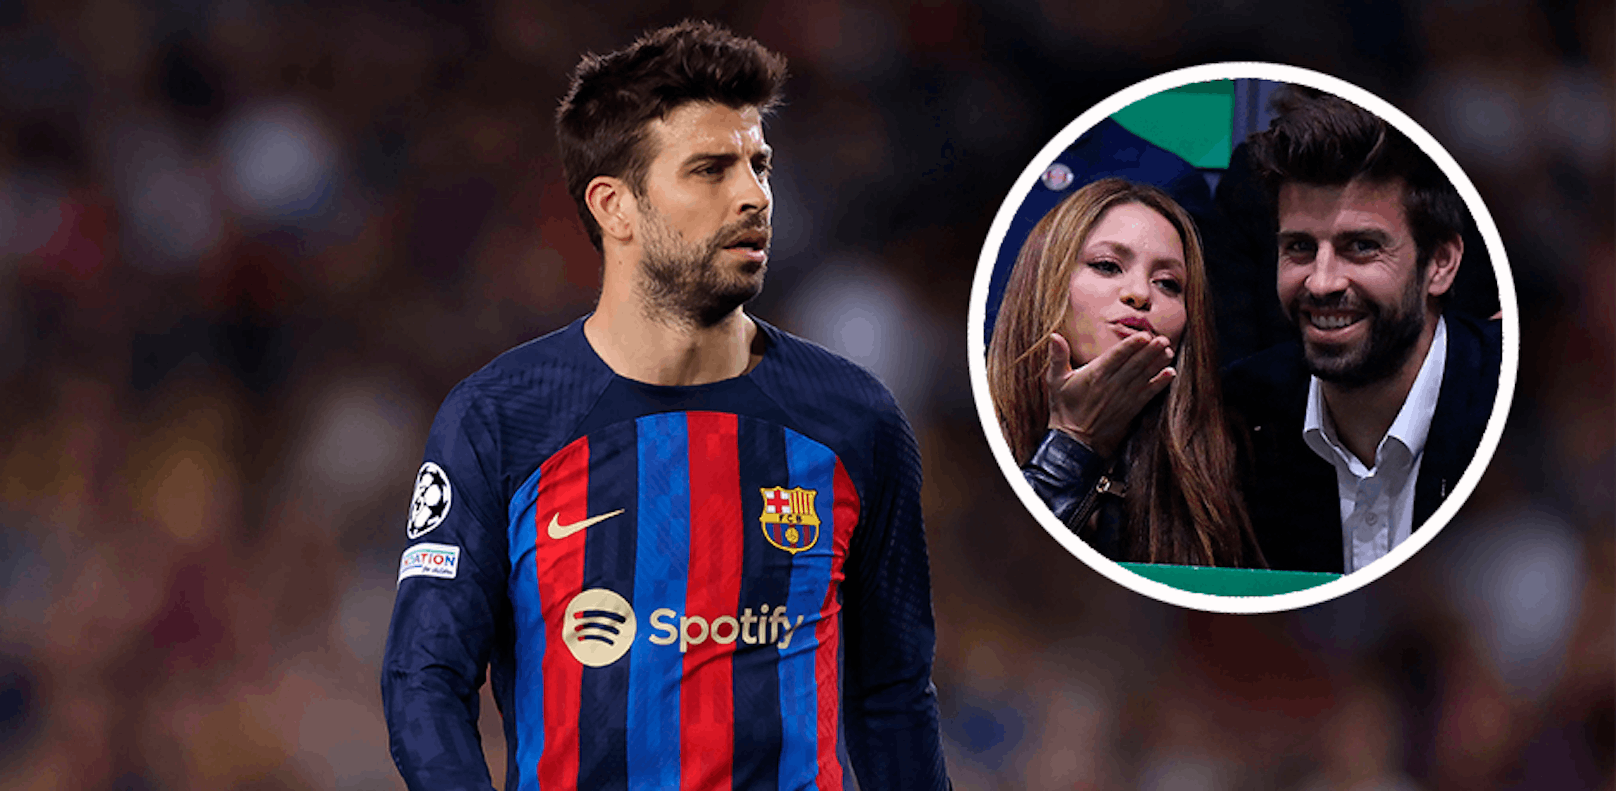 Streamingdienst Spotify könnte einen Deal mit Shakira abschließen. 